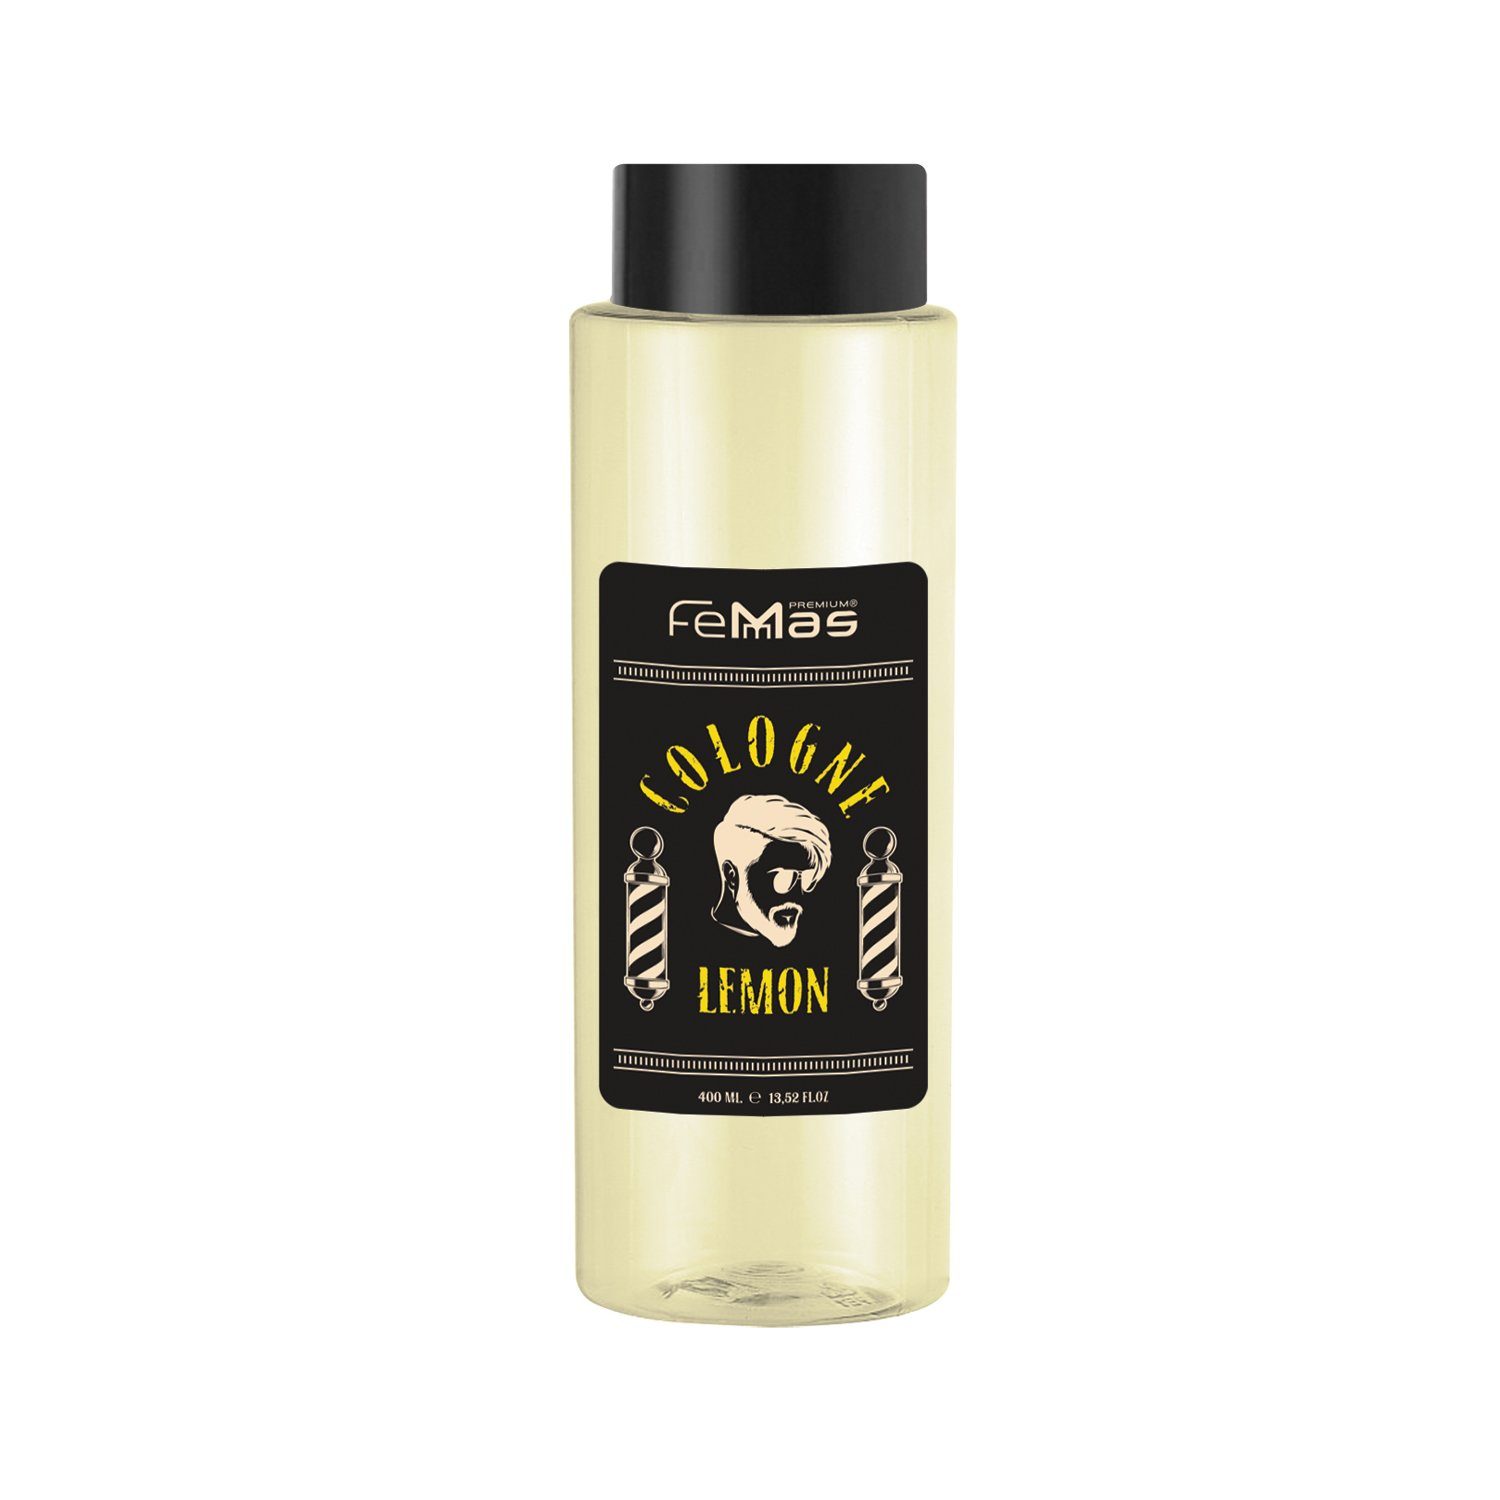 Femmas Premium Eau de Cologne FemMas Lemon Cologne 400ml